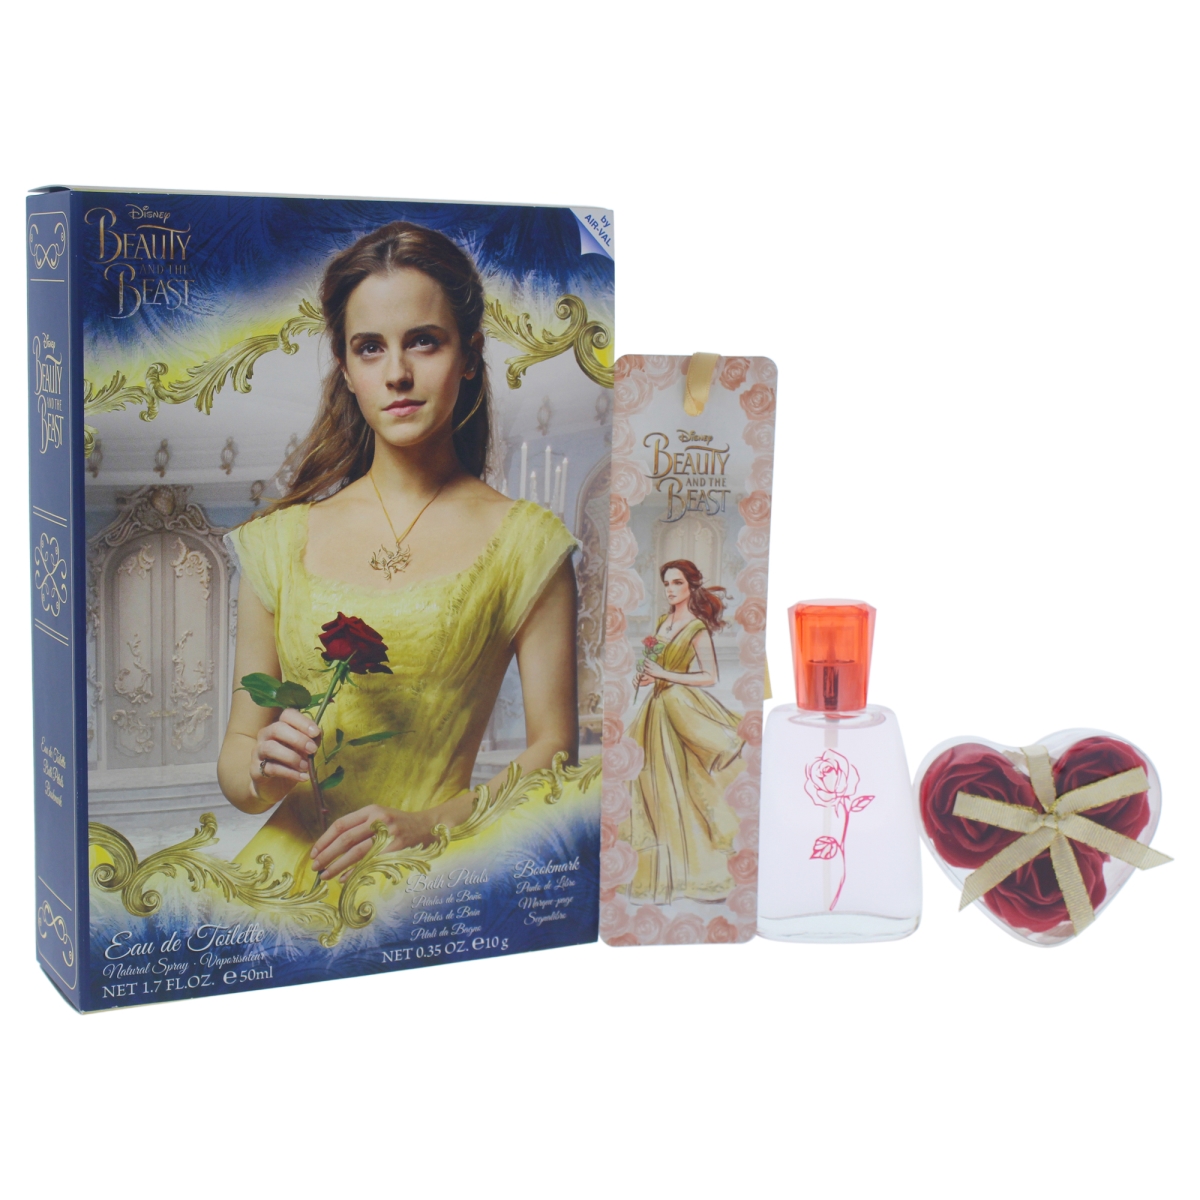 K-gs-2060 Beauty & The Beast For Kids Gift Set 1.7 Oz Eau De Toilette Spray, 0.35 Oz Bath Petals & Bookmark - 3 Piece